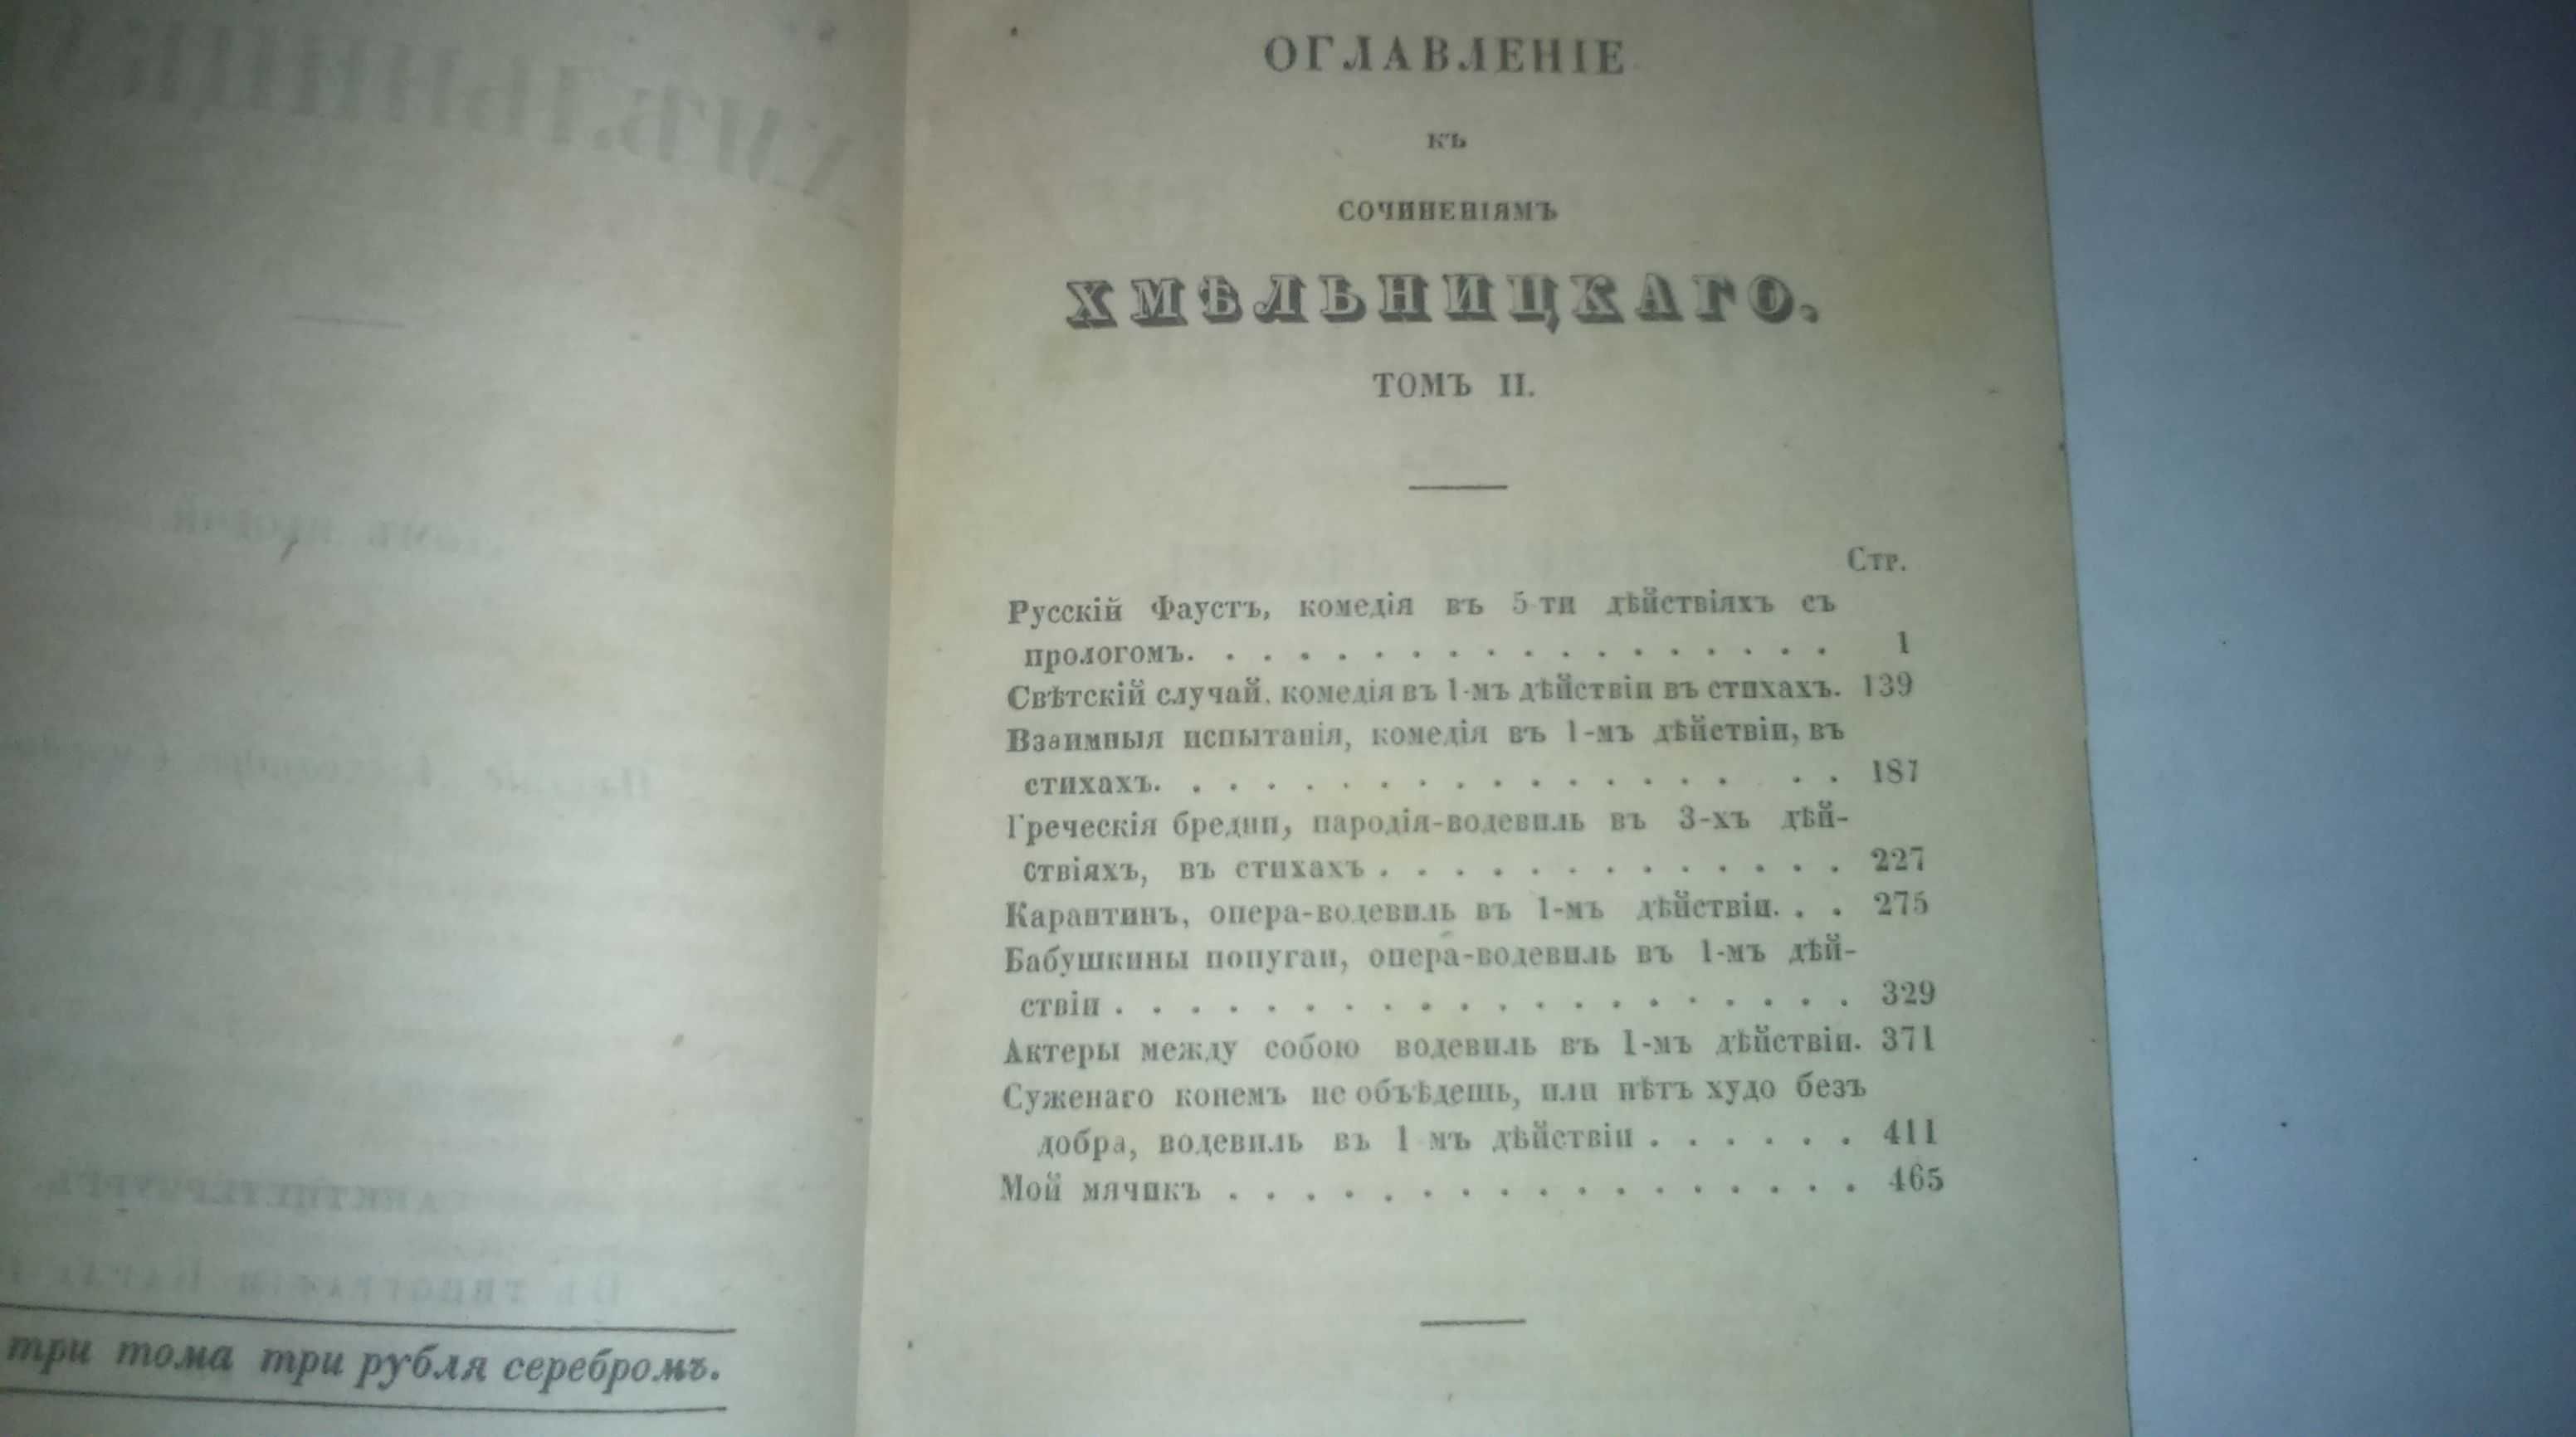 Сочинения Хмельницкого 1849 г.